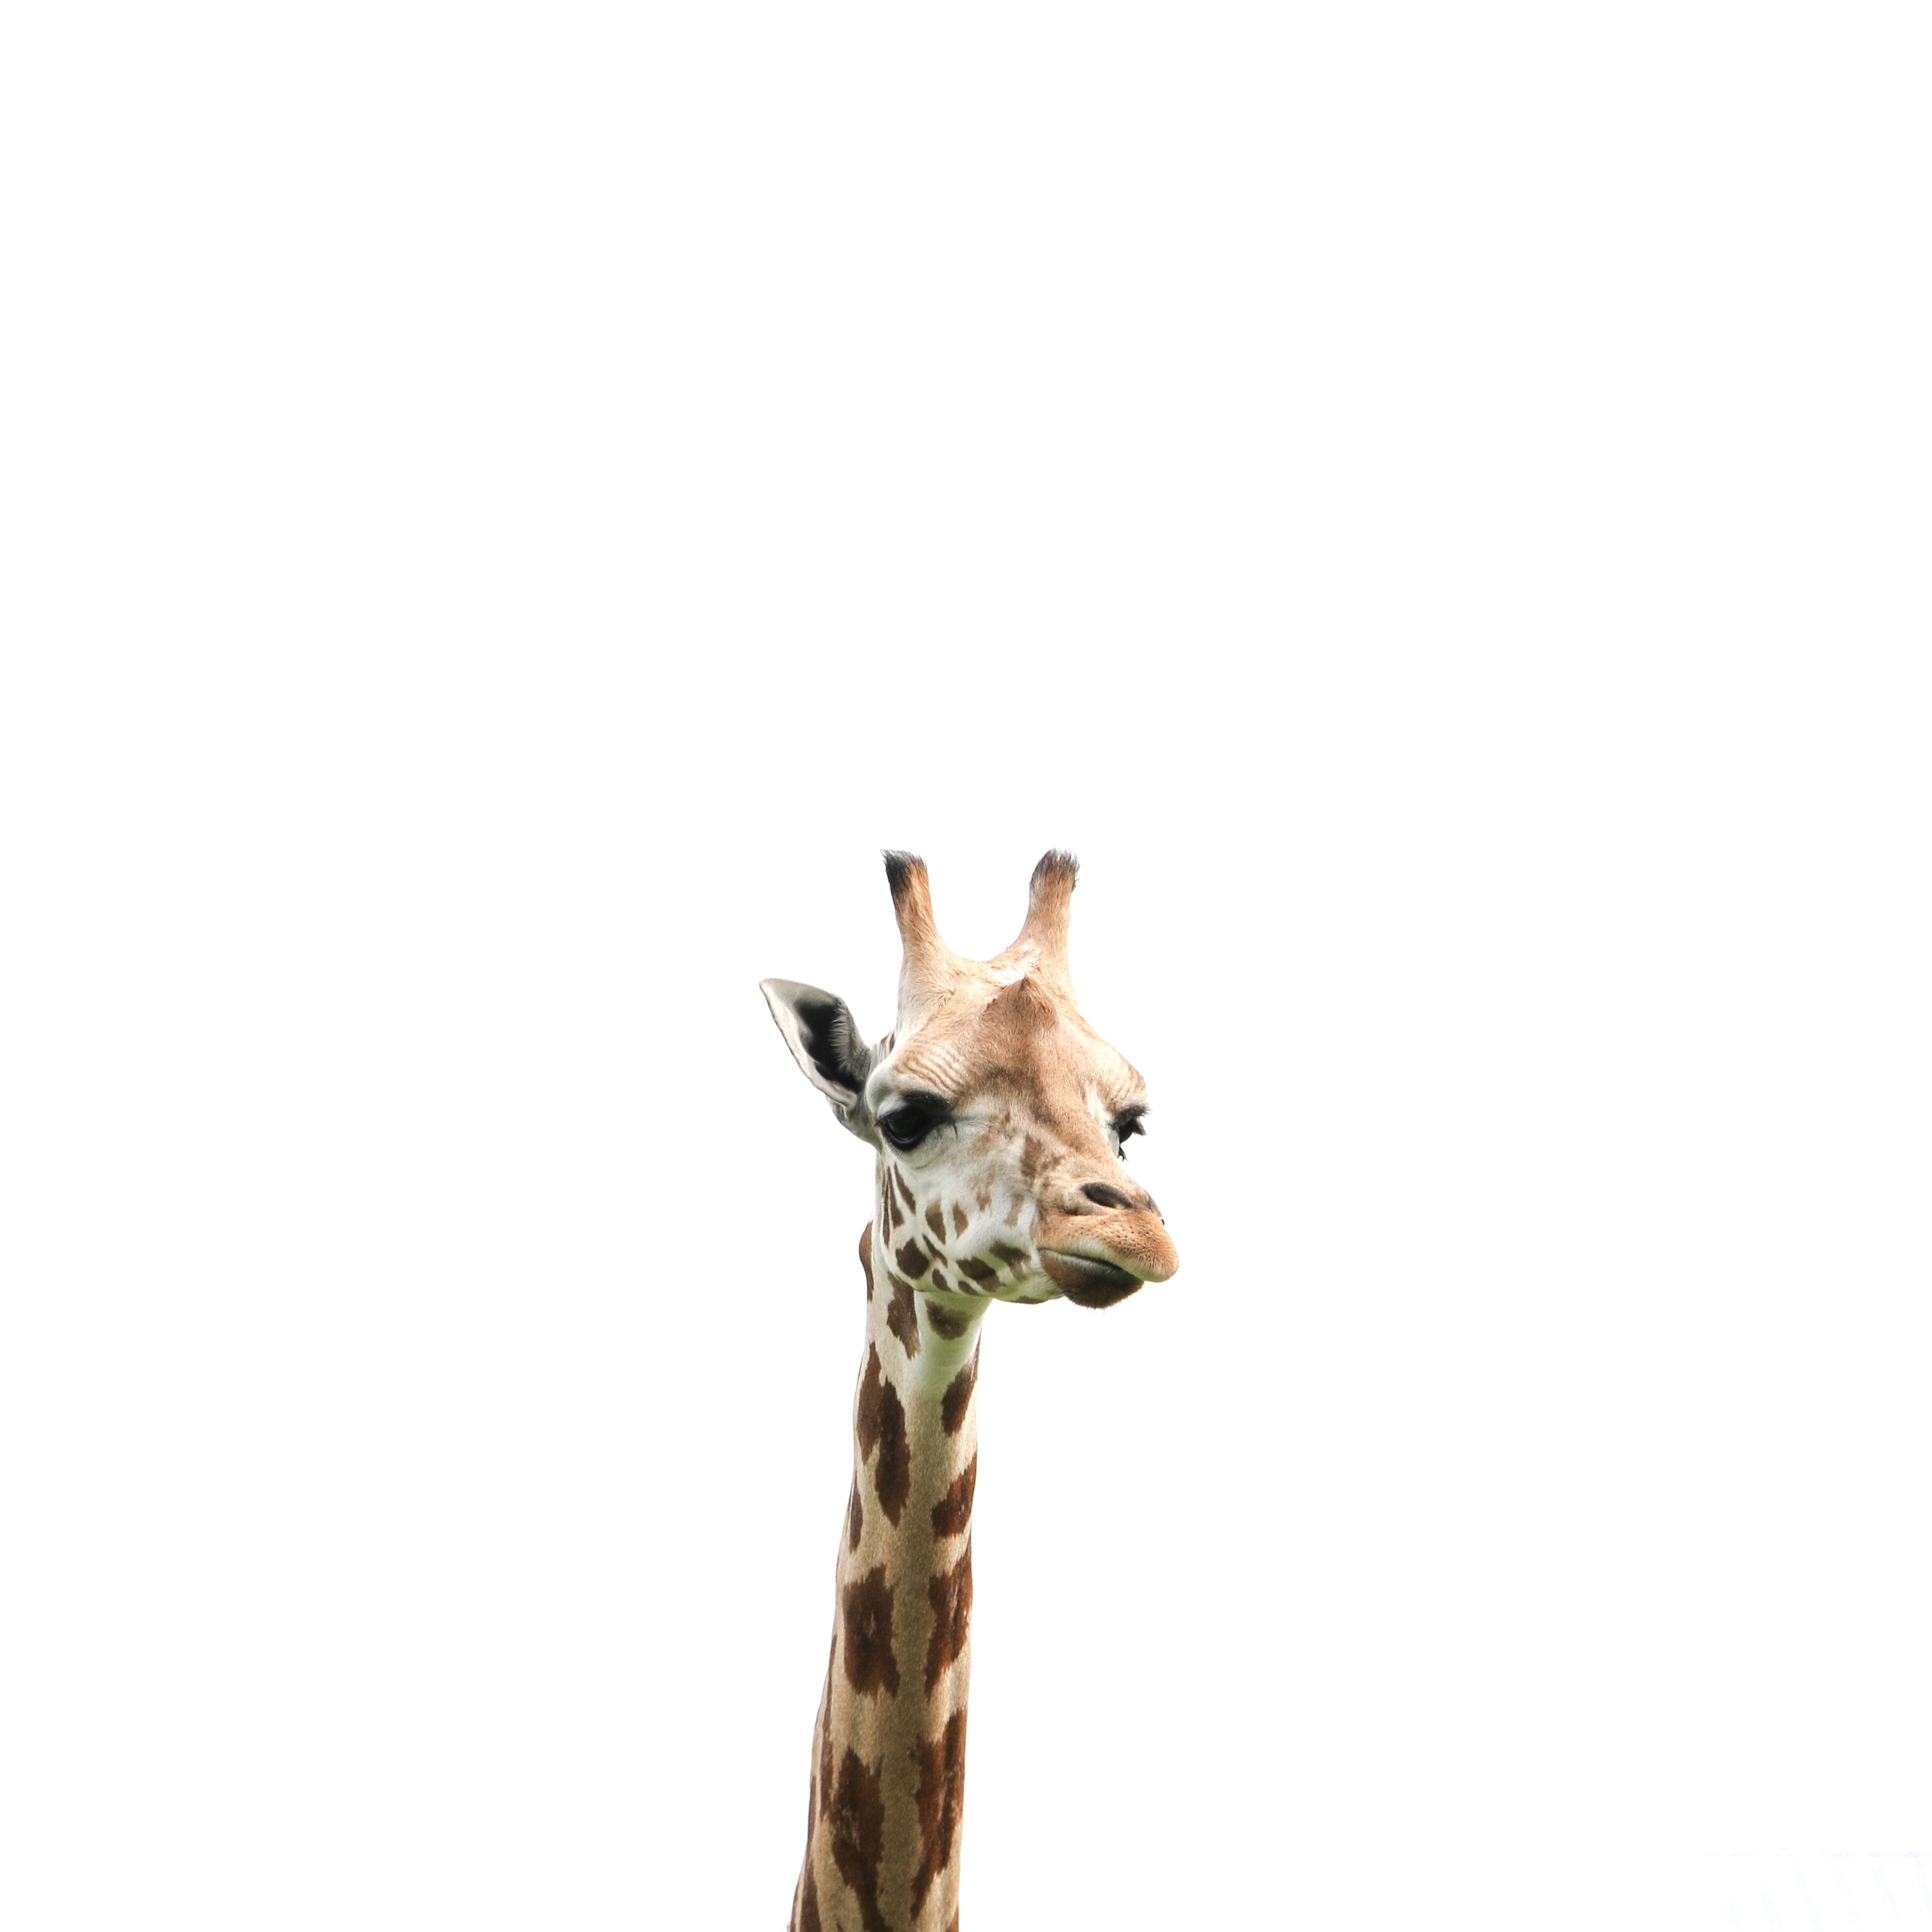 giraffe fun facts 